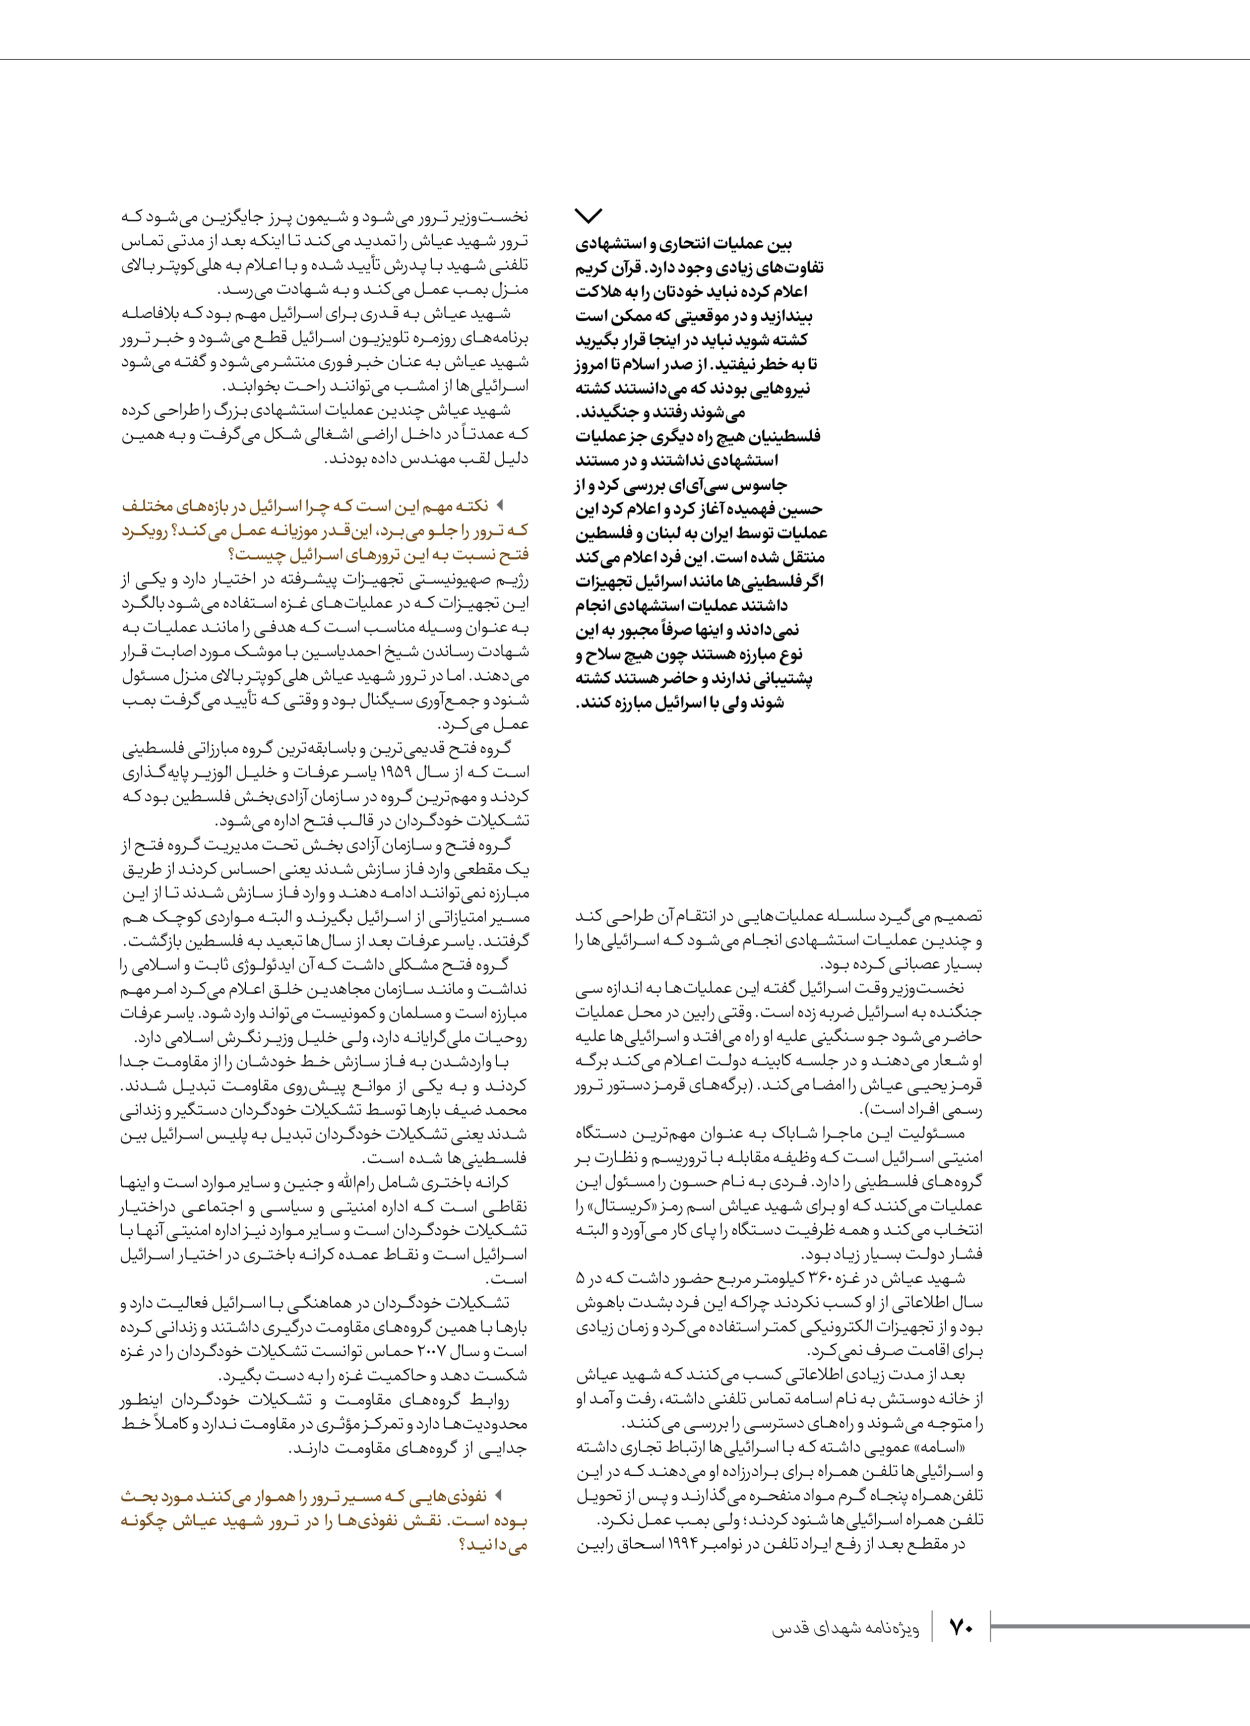 روزنامه ایران - ویژه نامه شهدای حماس - ۲۱ آذر ۱۴۰۲ - صفحه ۷۰